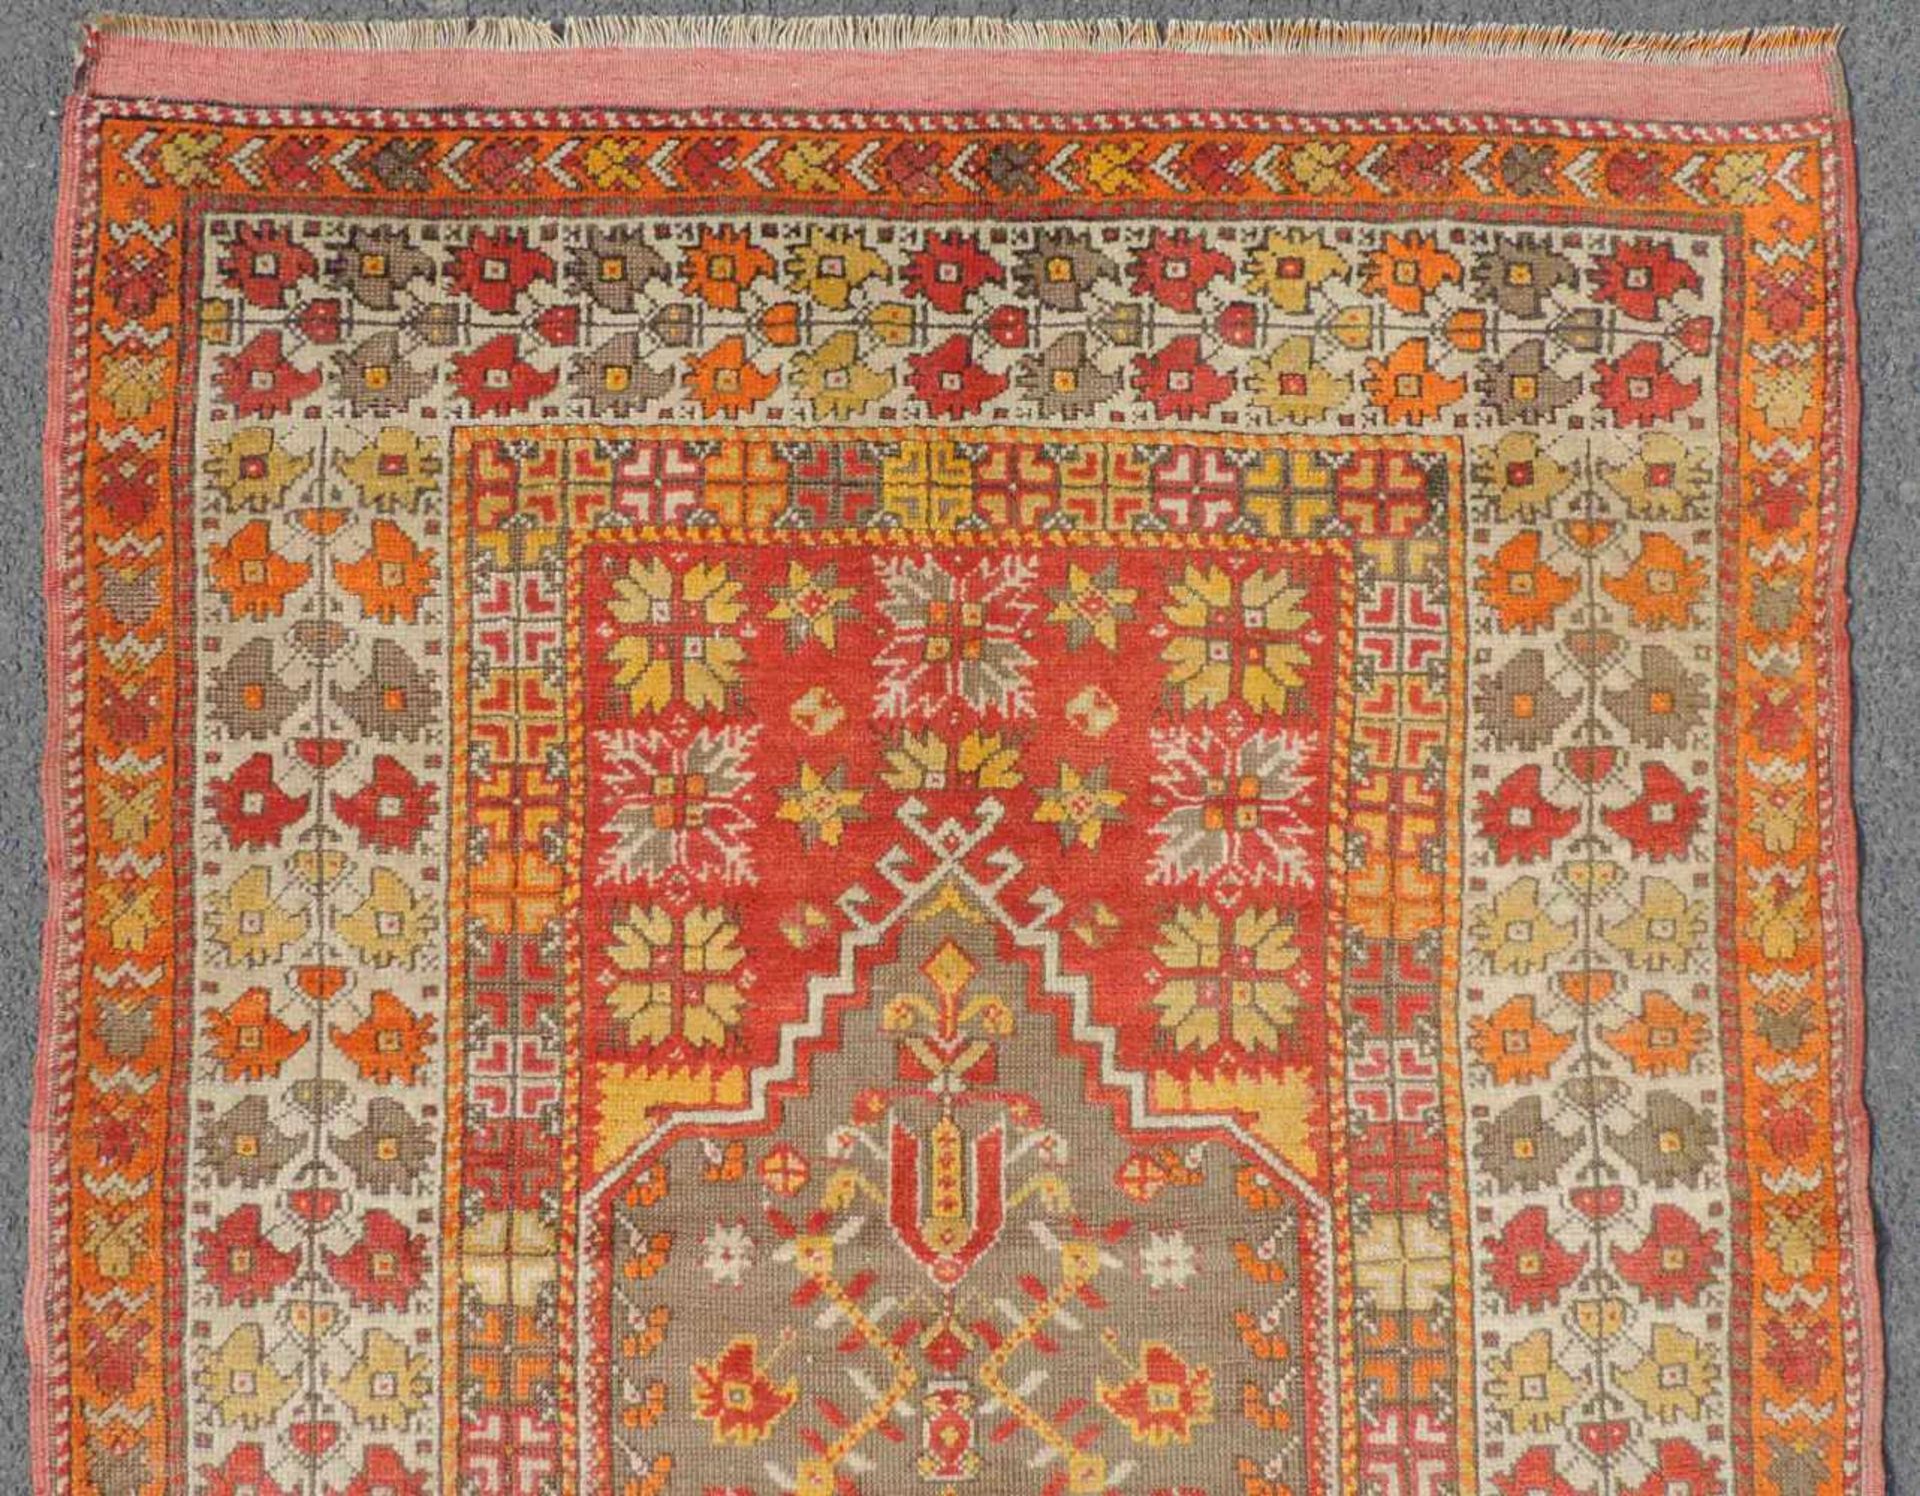 Mucur Gebetsteppich. Anatolien. Türkei. Antik, um 1870. 155 cm x 114 cm. Handgeknüpft. Wolle auf - Image 3 of 6